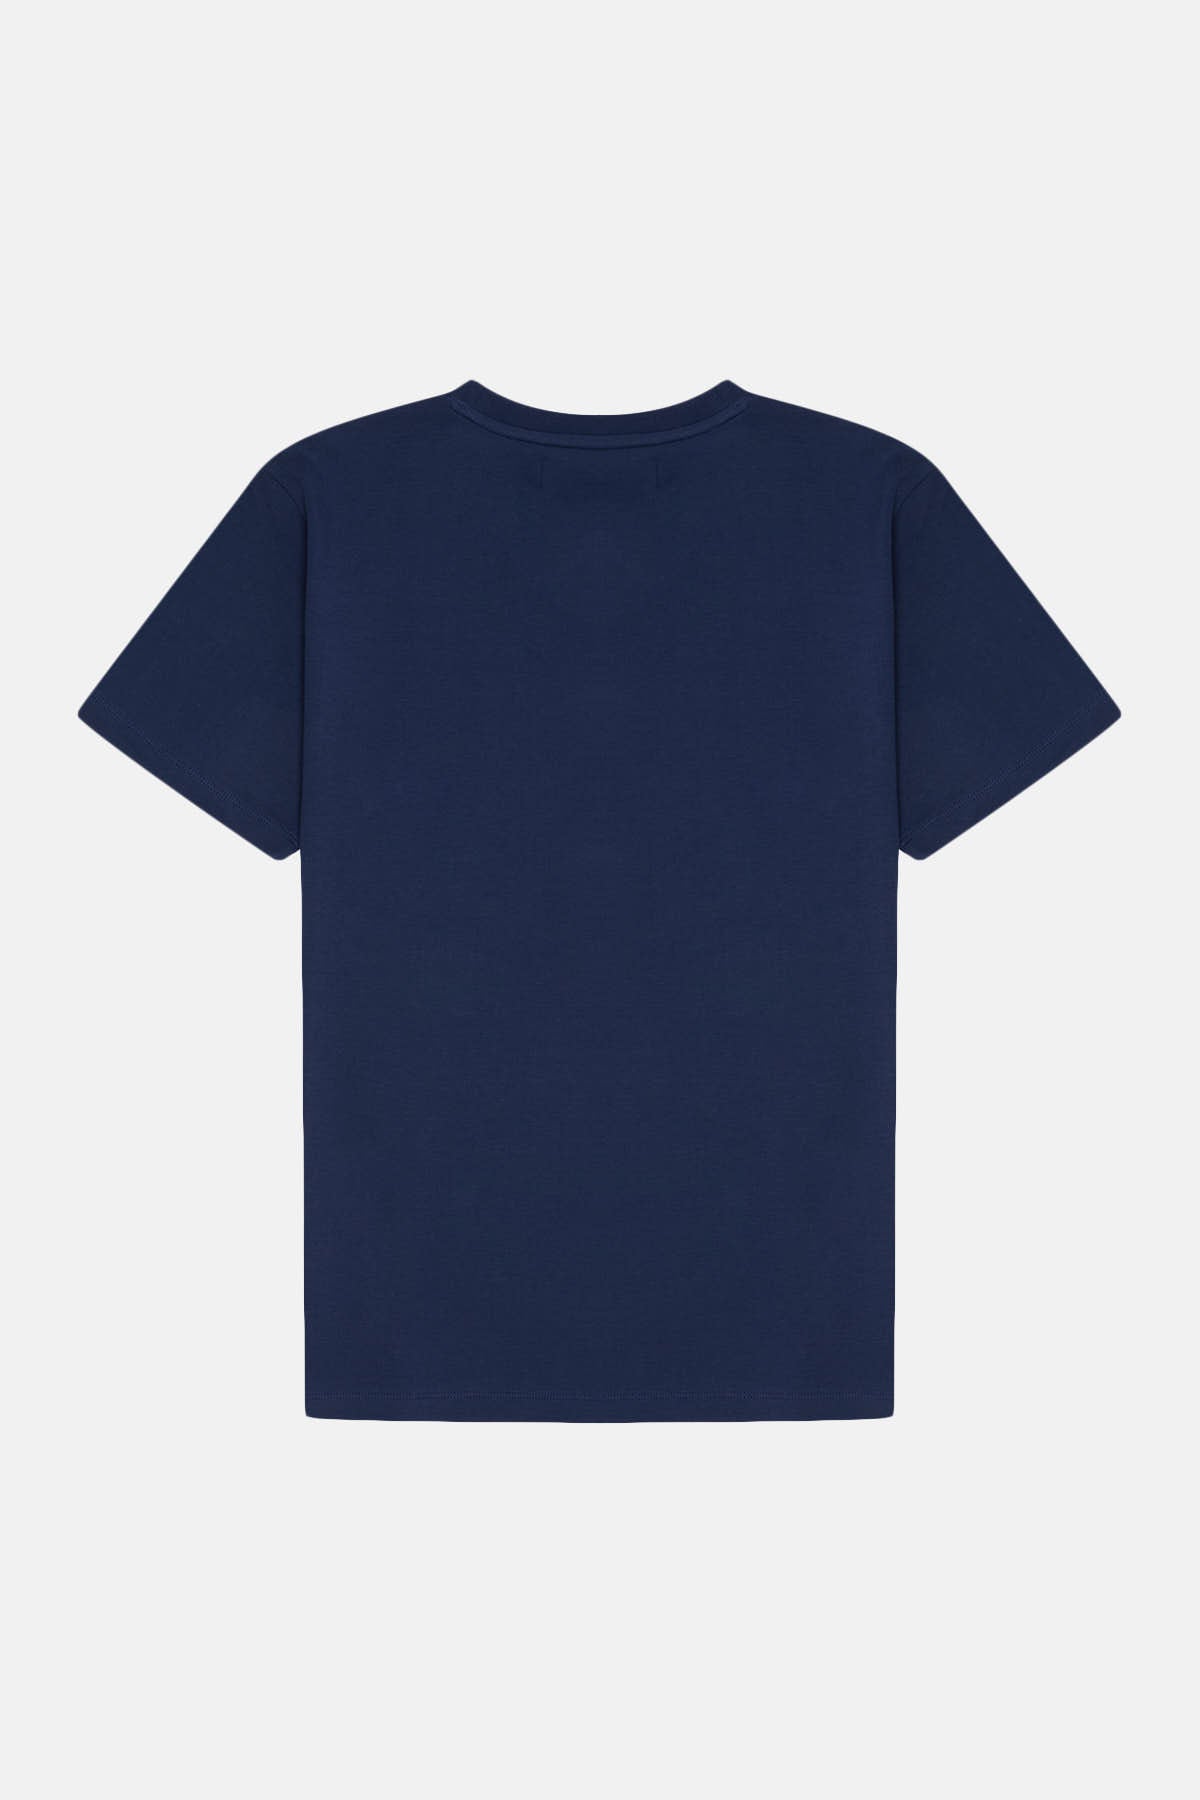 Kızıl Tilki Premium T-shirt - Lacivert